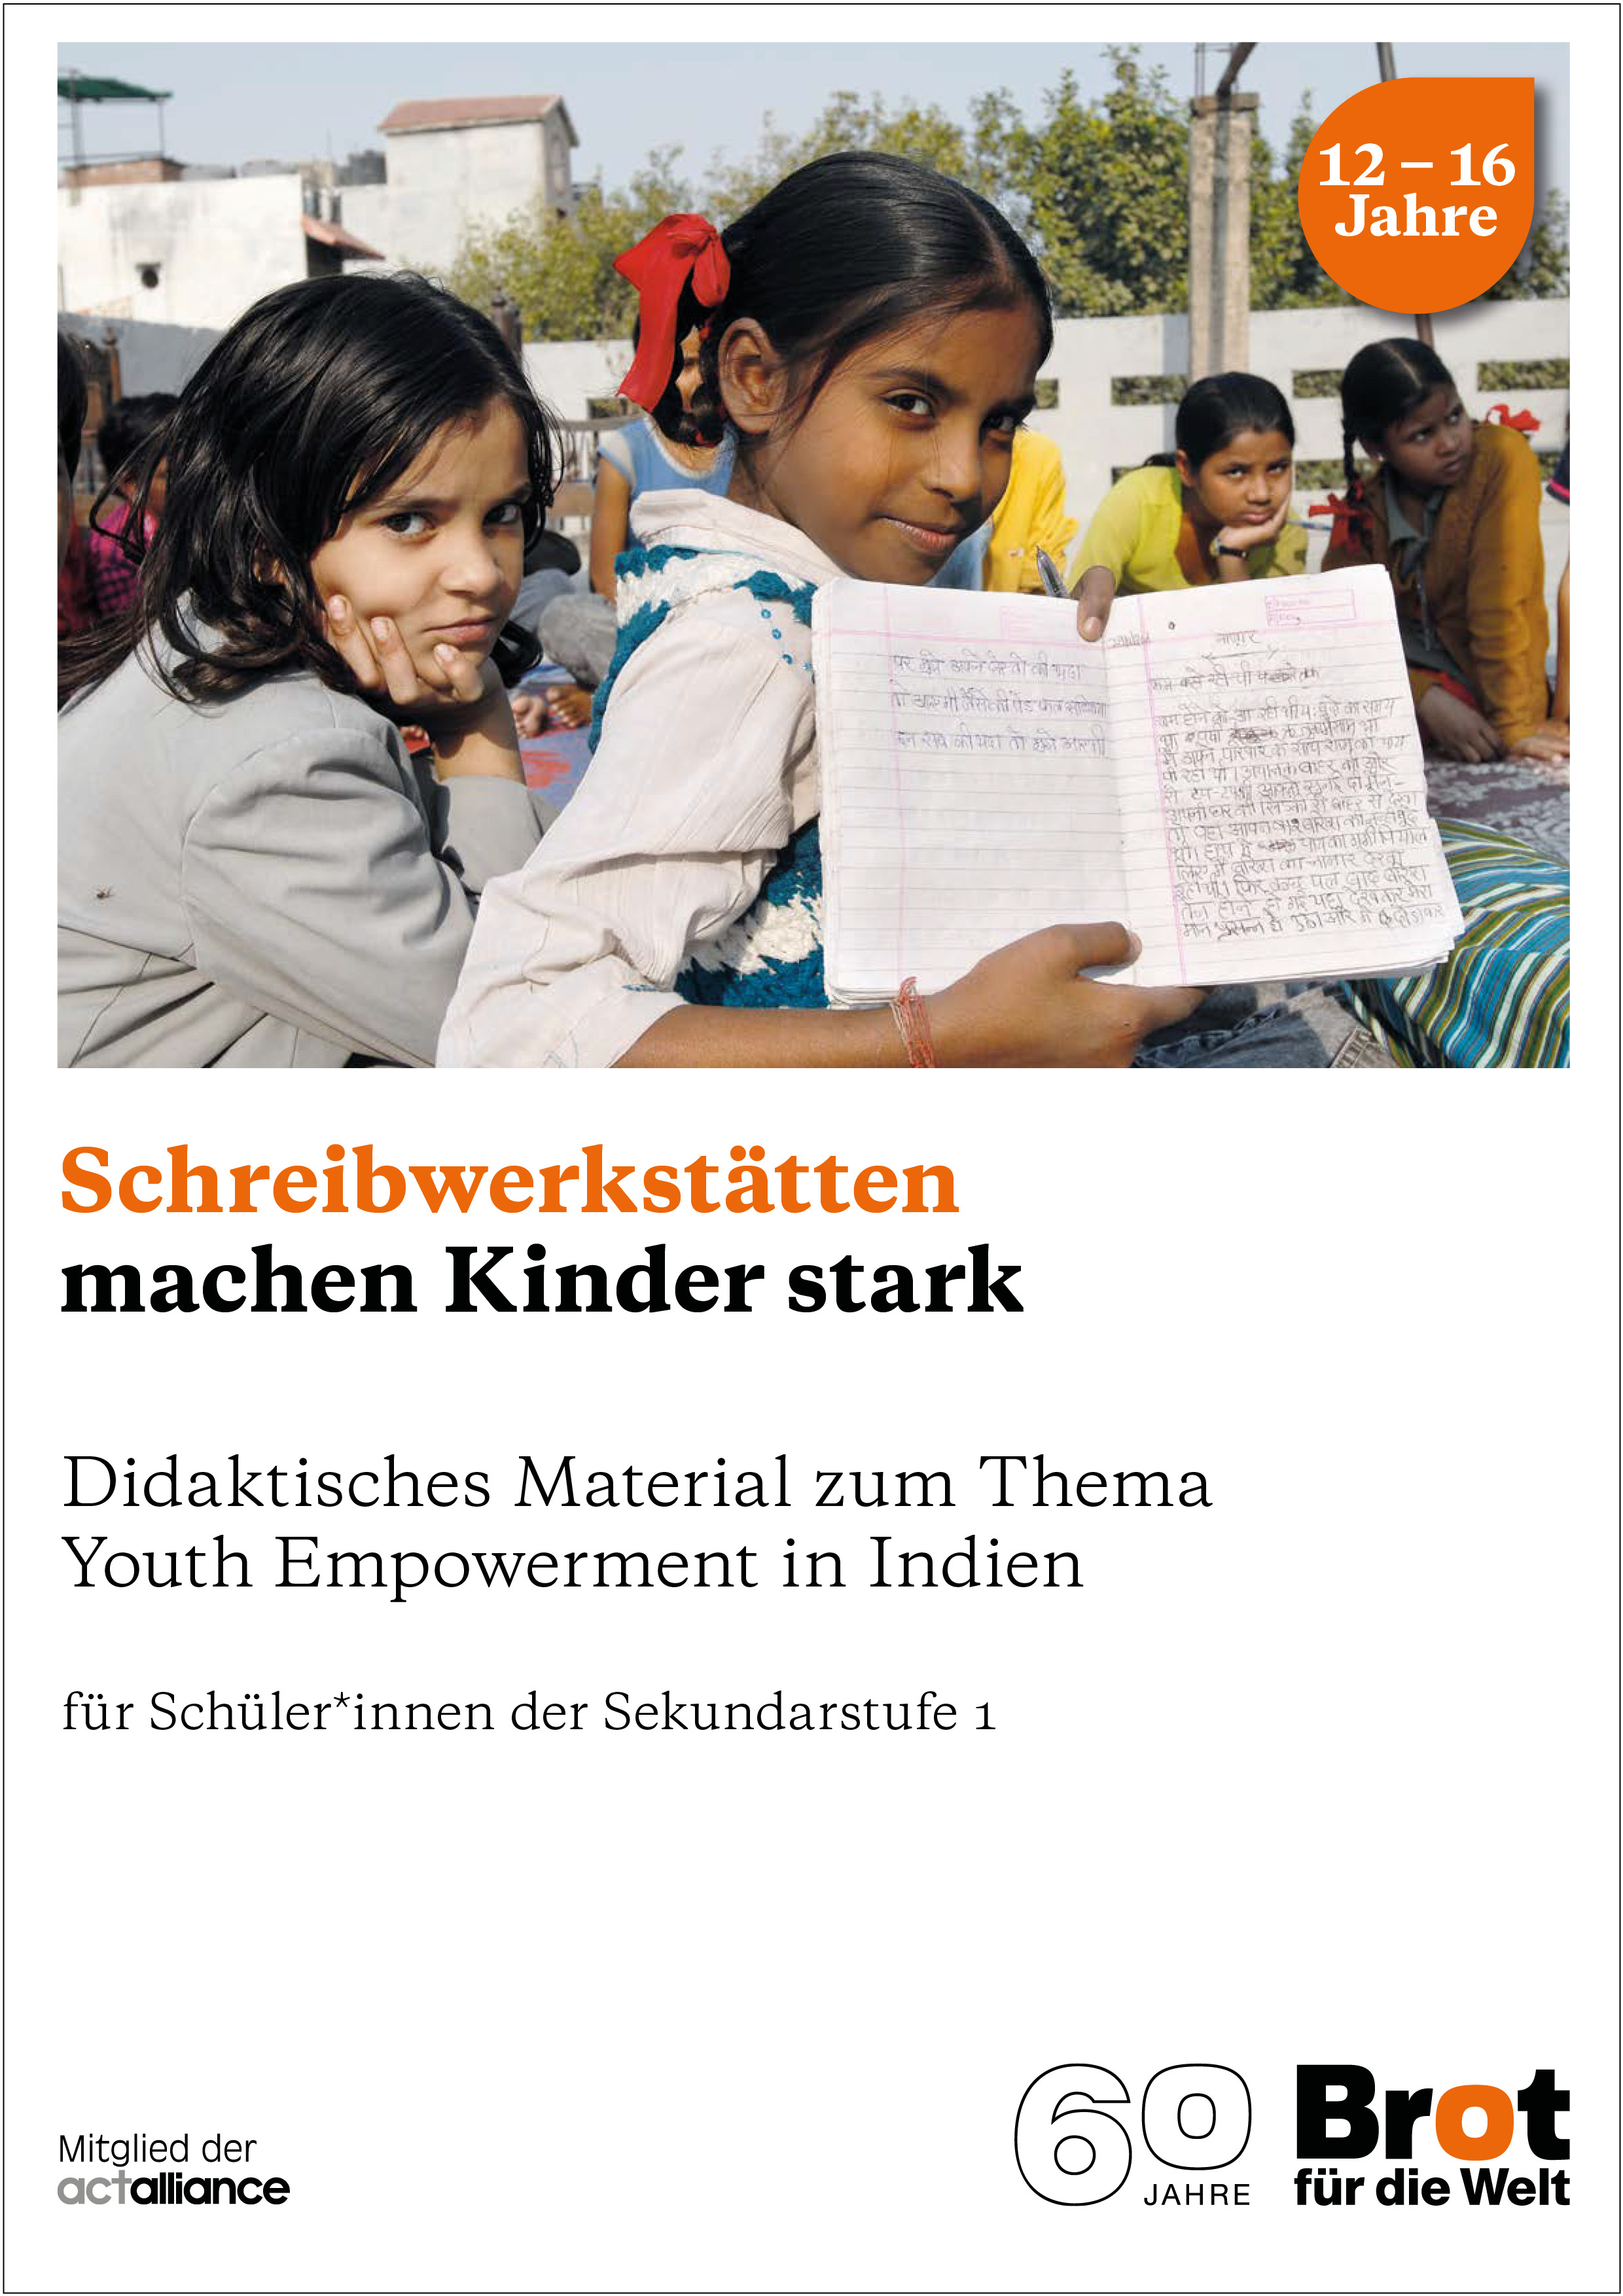 Bildungsmaterial zu Kinderrechten und Youth Empowerment in Indien